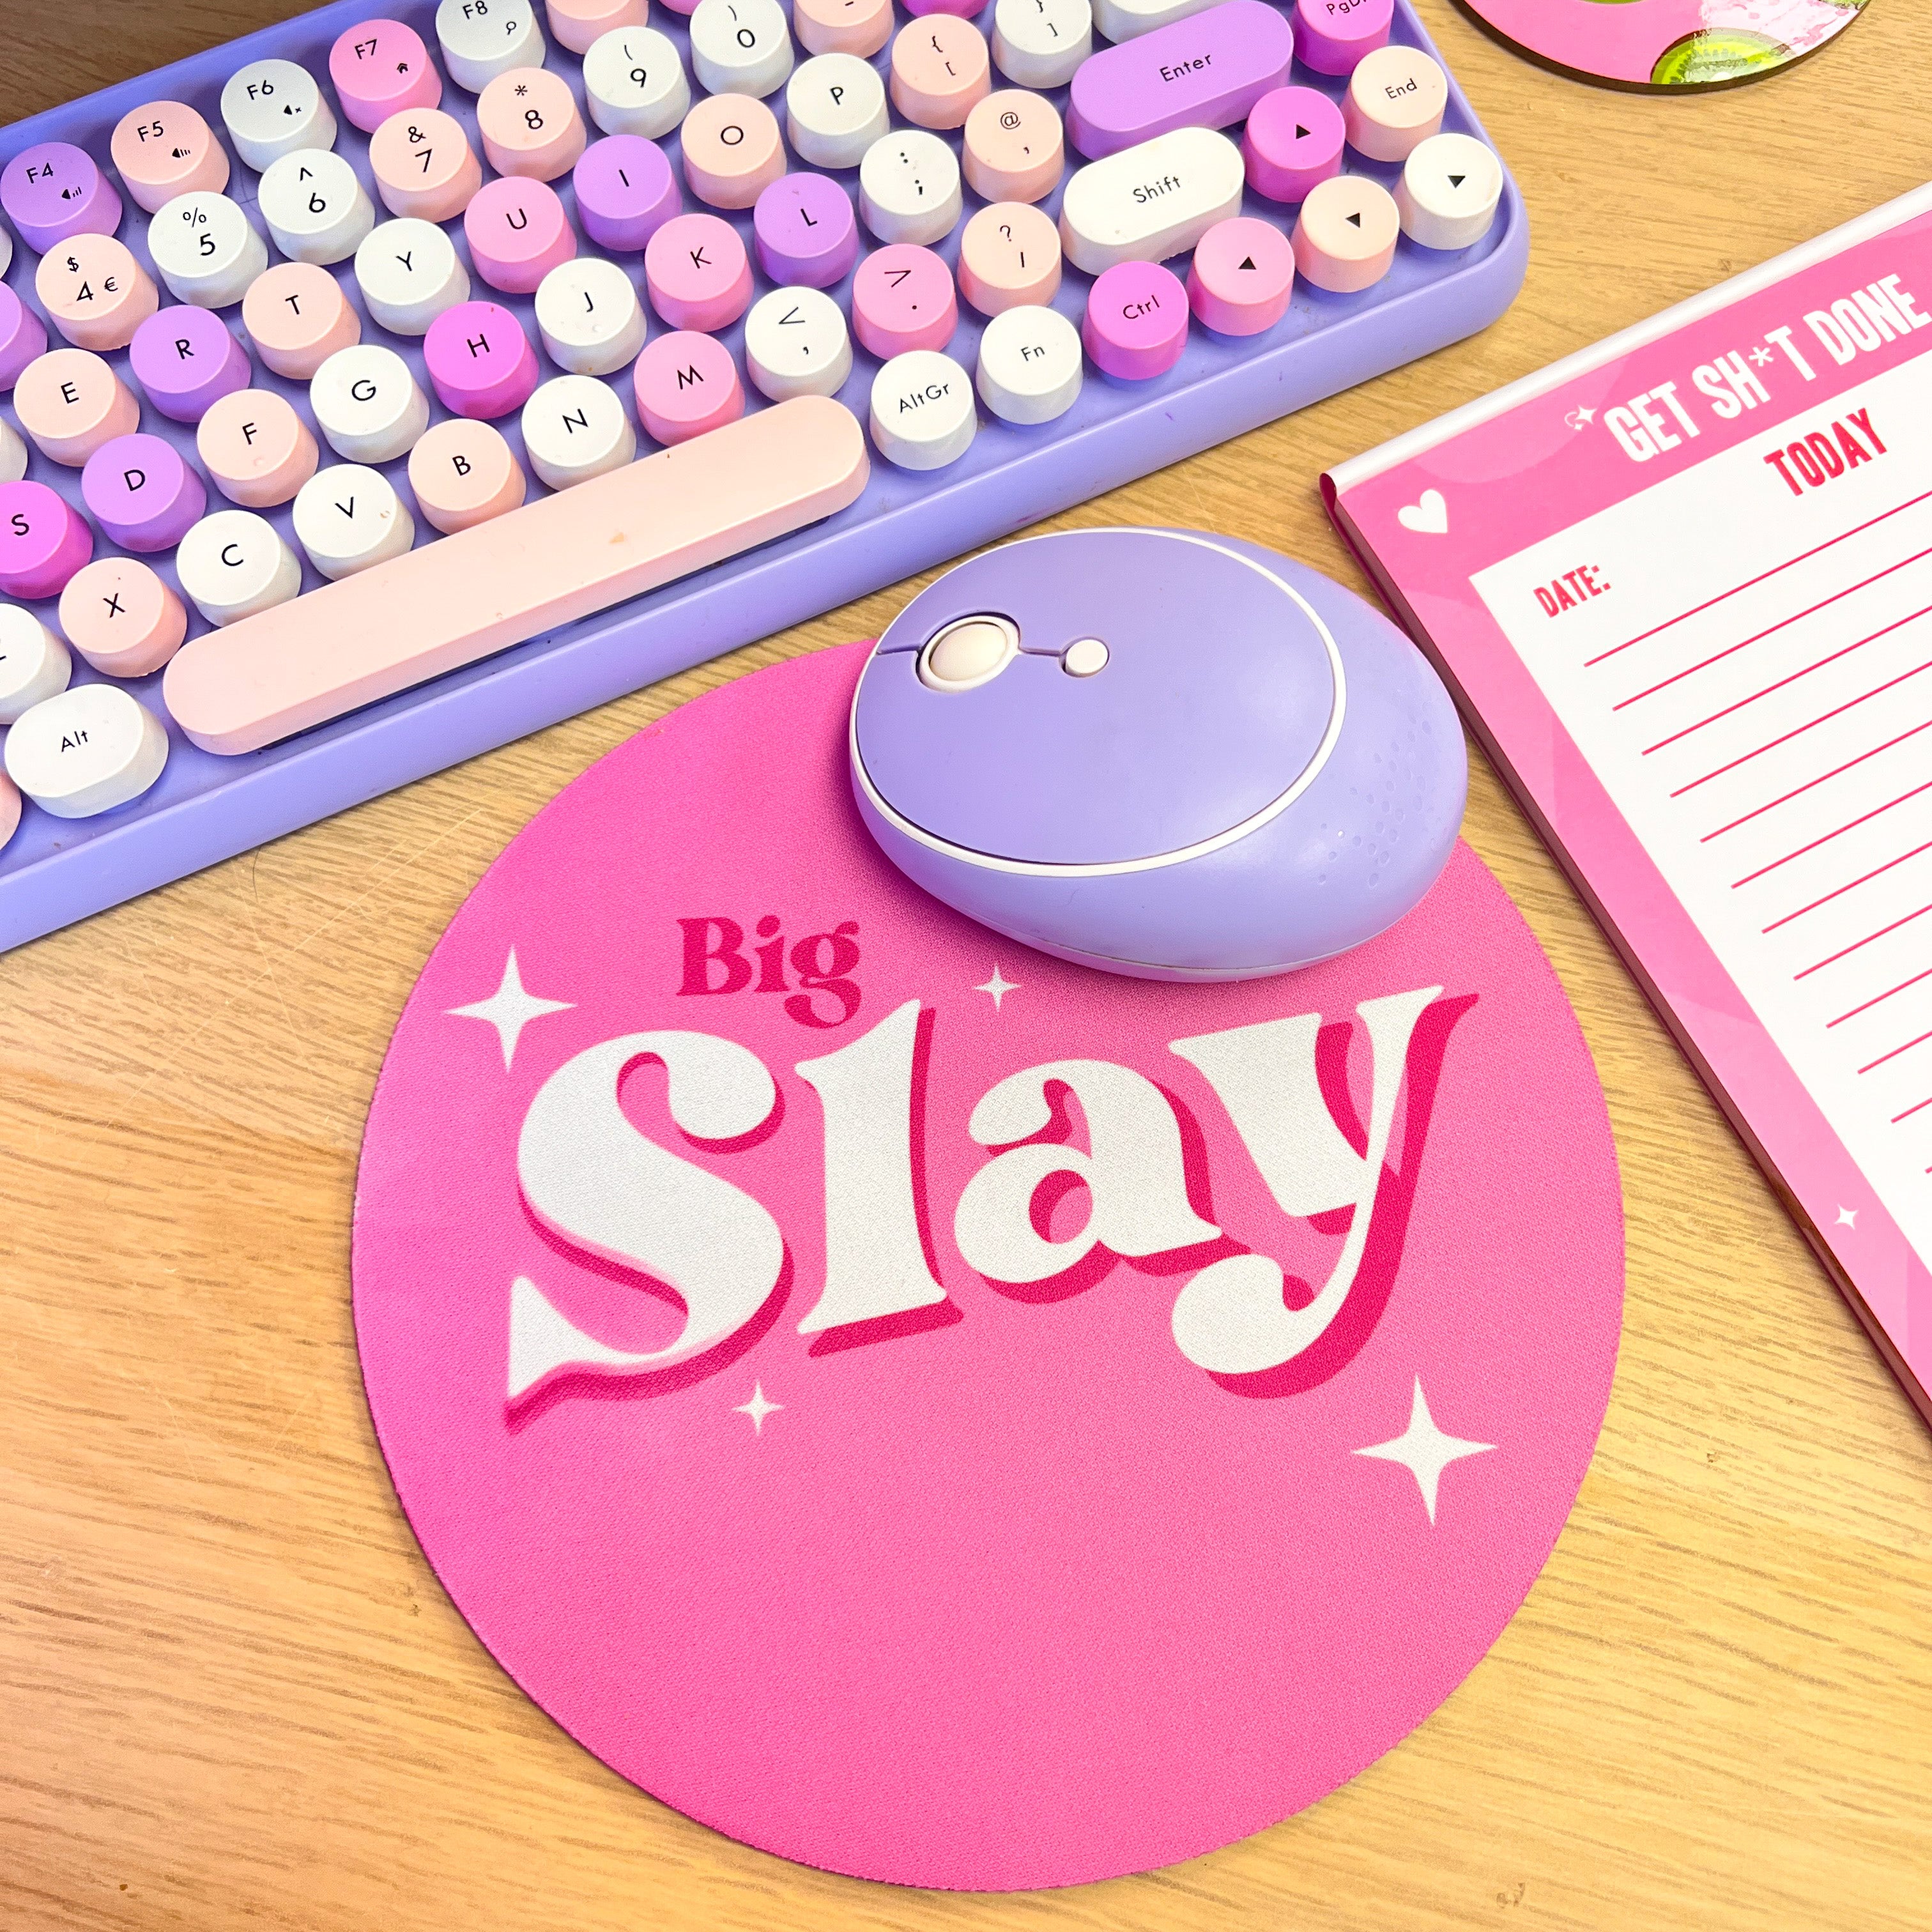 Big Slay mouse pad